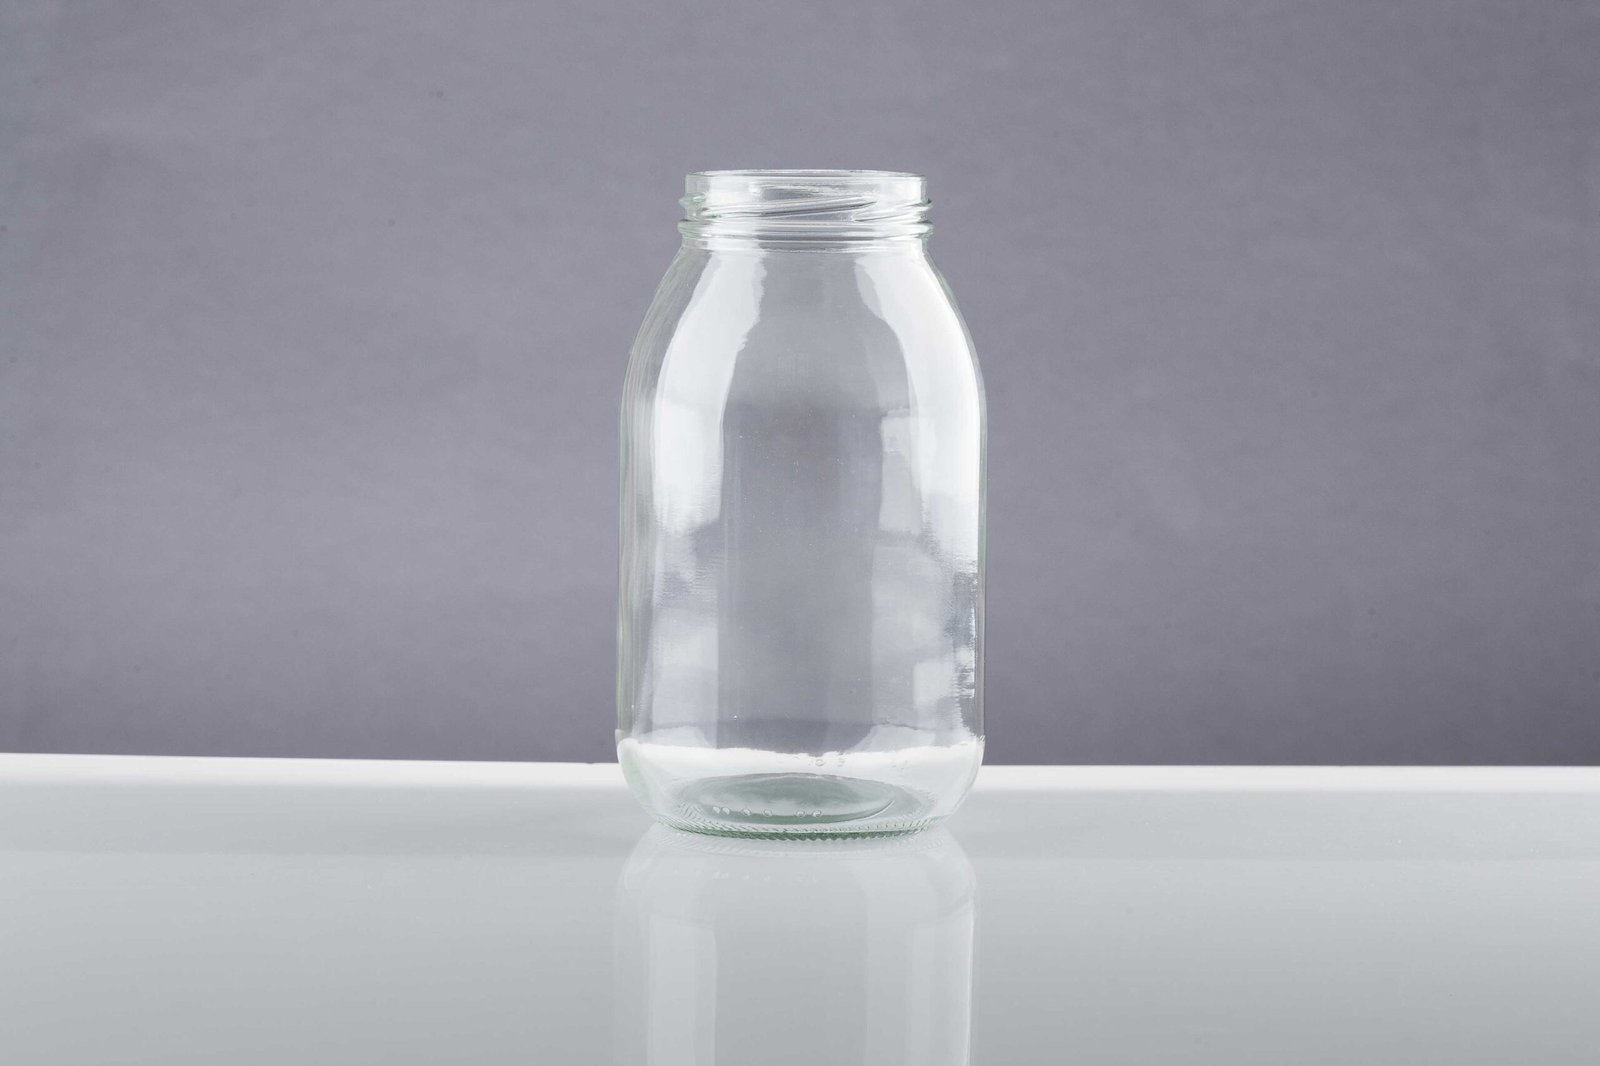 Envase de vidrio con capacidad de 750ml